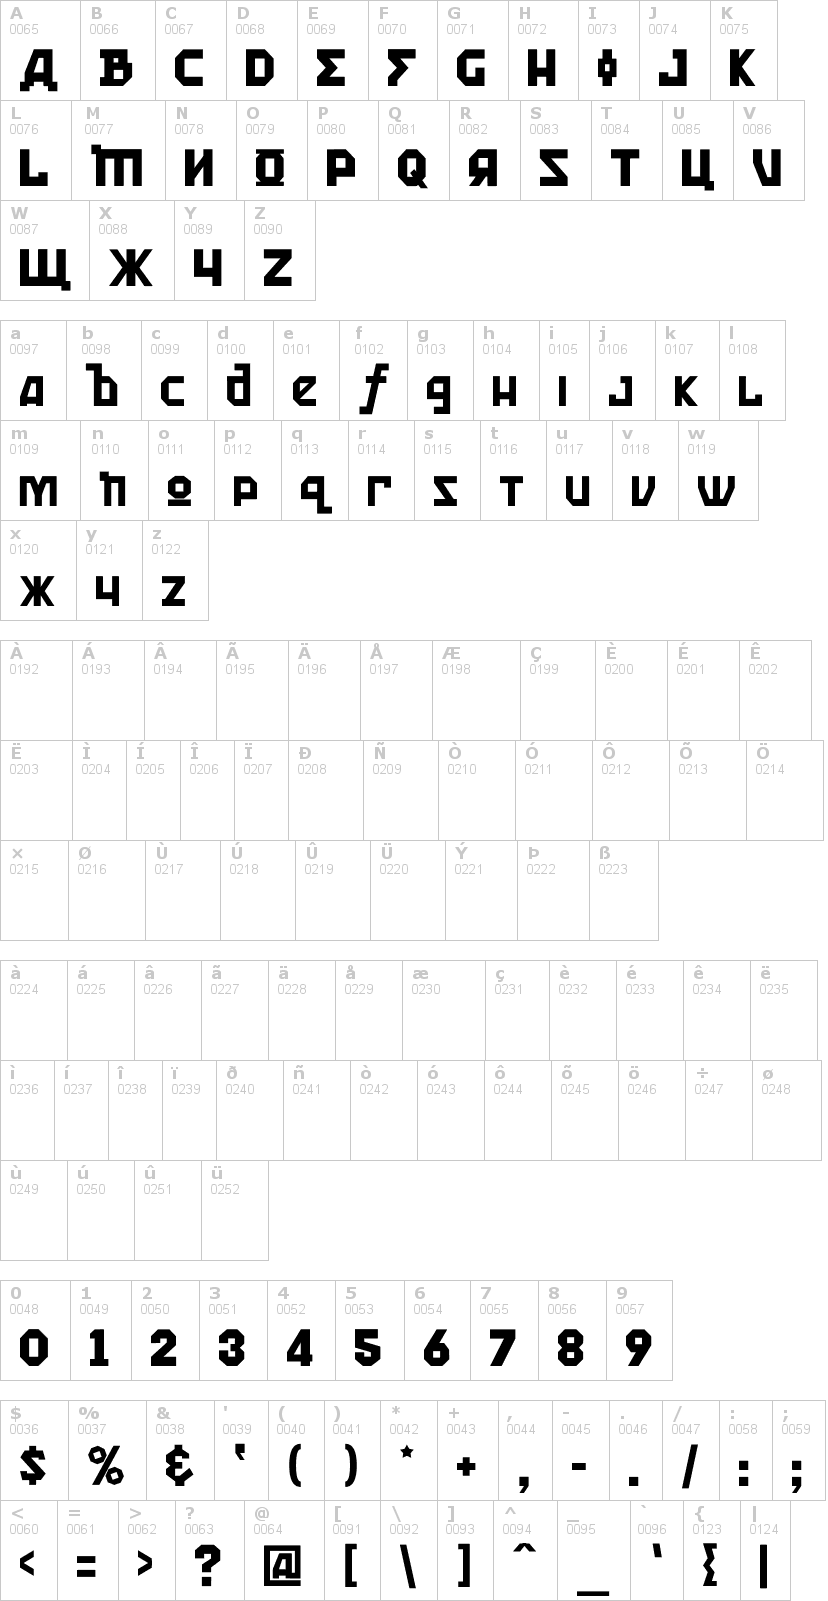 Lettere dell'alfabeto del font kremlin-kommisar con le quali è possibile realizzare adesivi prespaziati